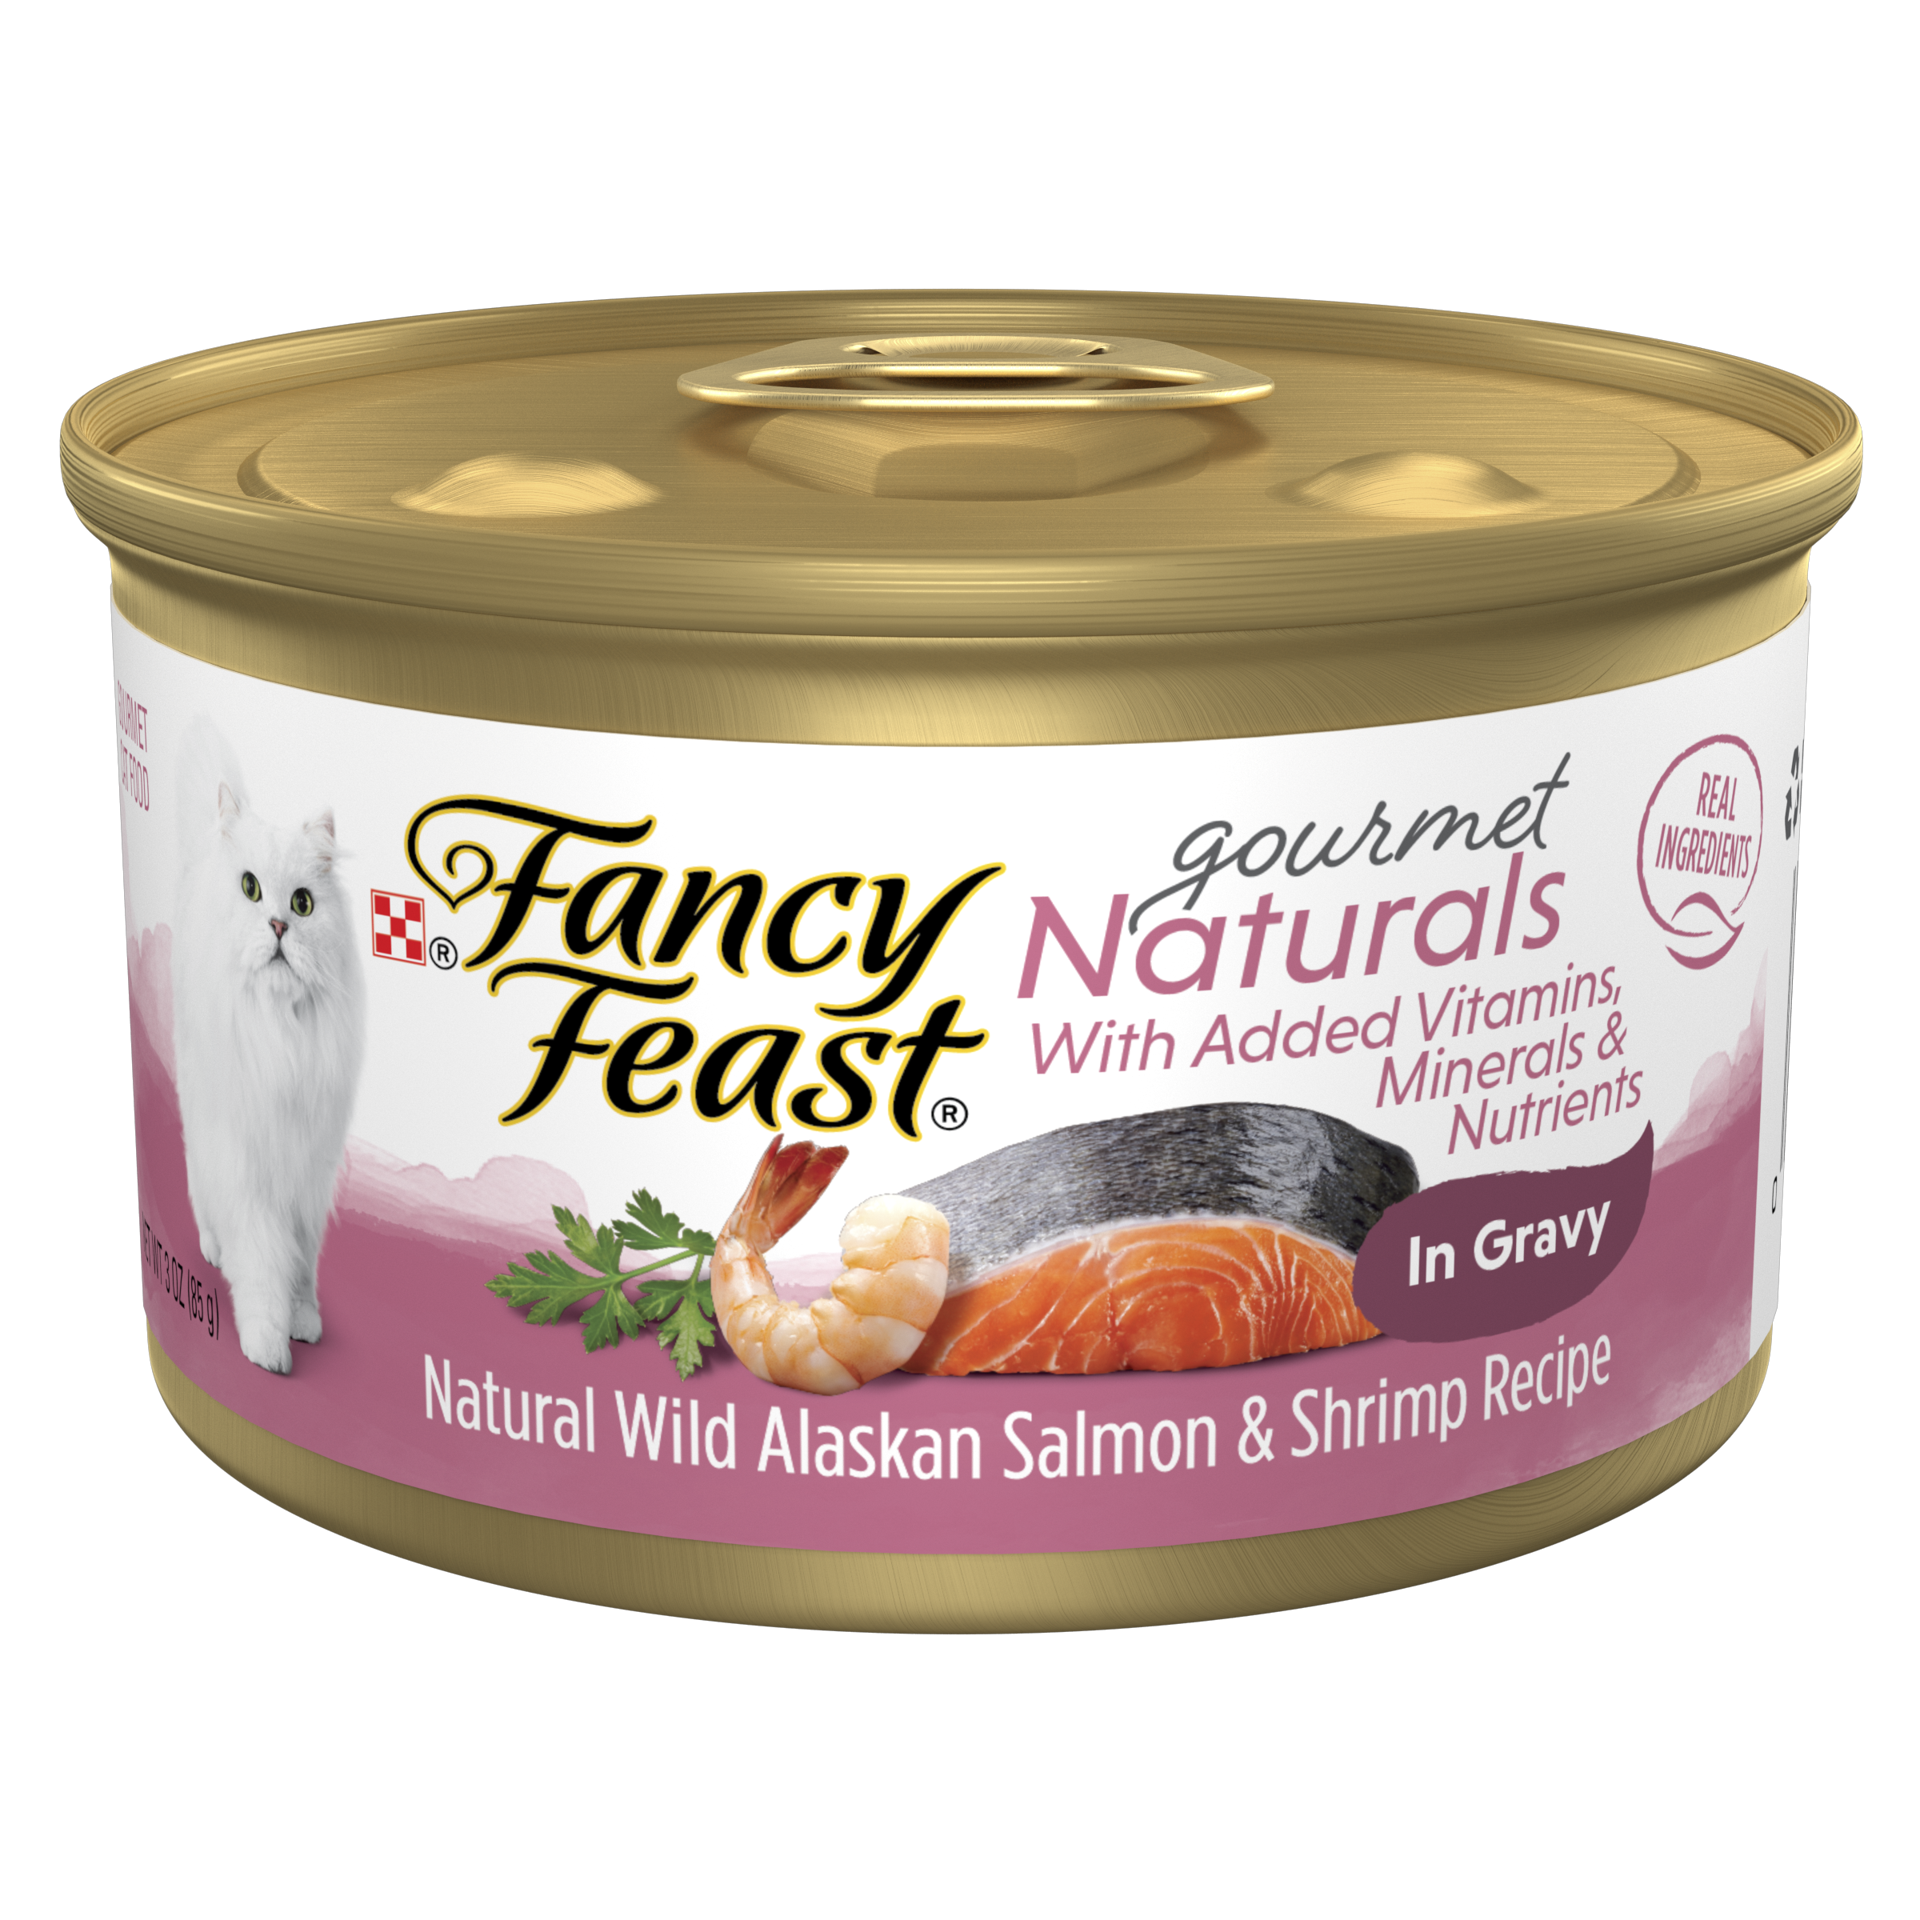 slide 1 of 2, Fancy Feast Gourmet Naturals Wild Alaskan Salmon & Shrimp Recipe in Gravy Adult Wet Cat Food, 3 oz